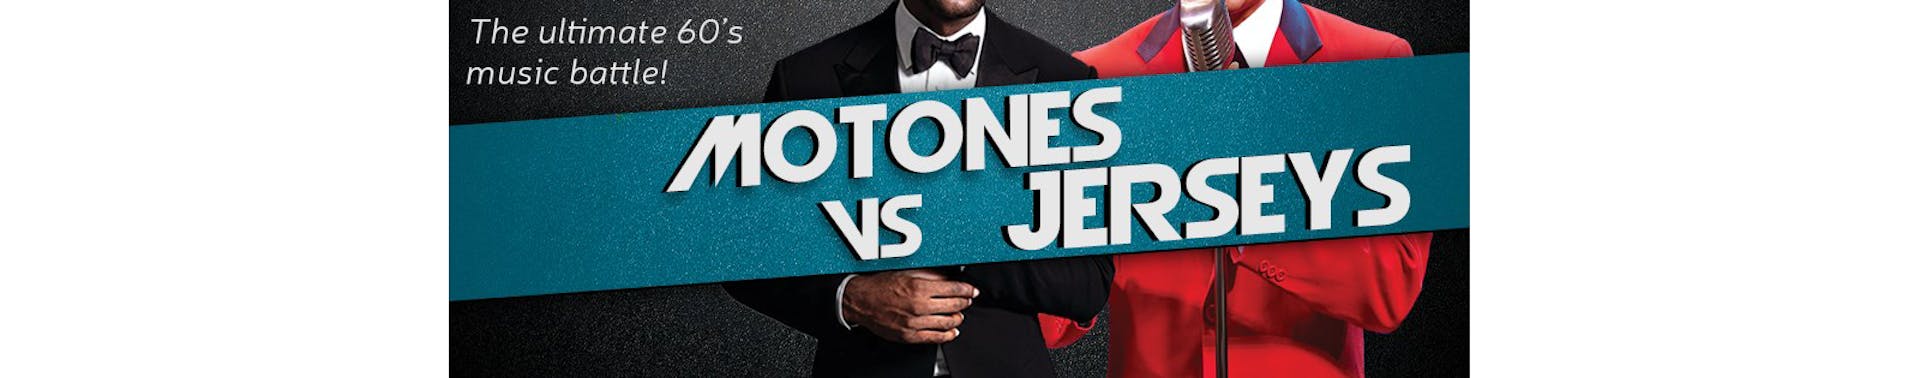 Motones vs Jerseys